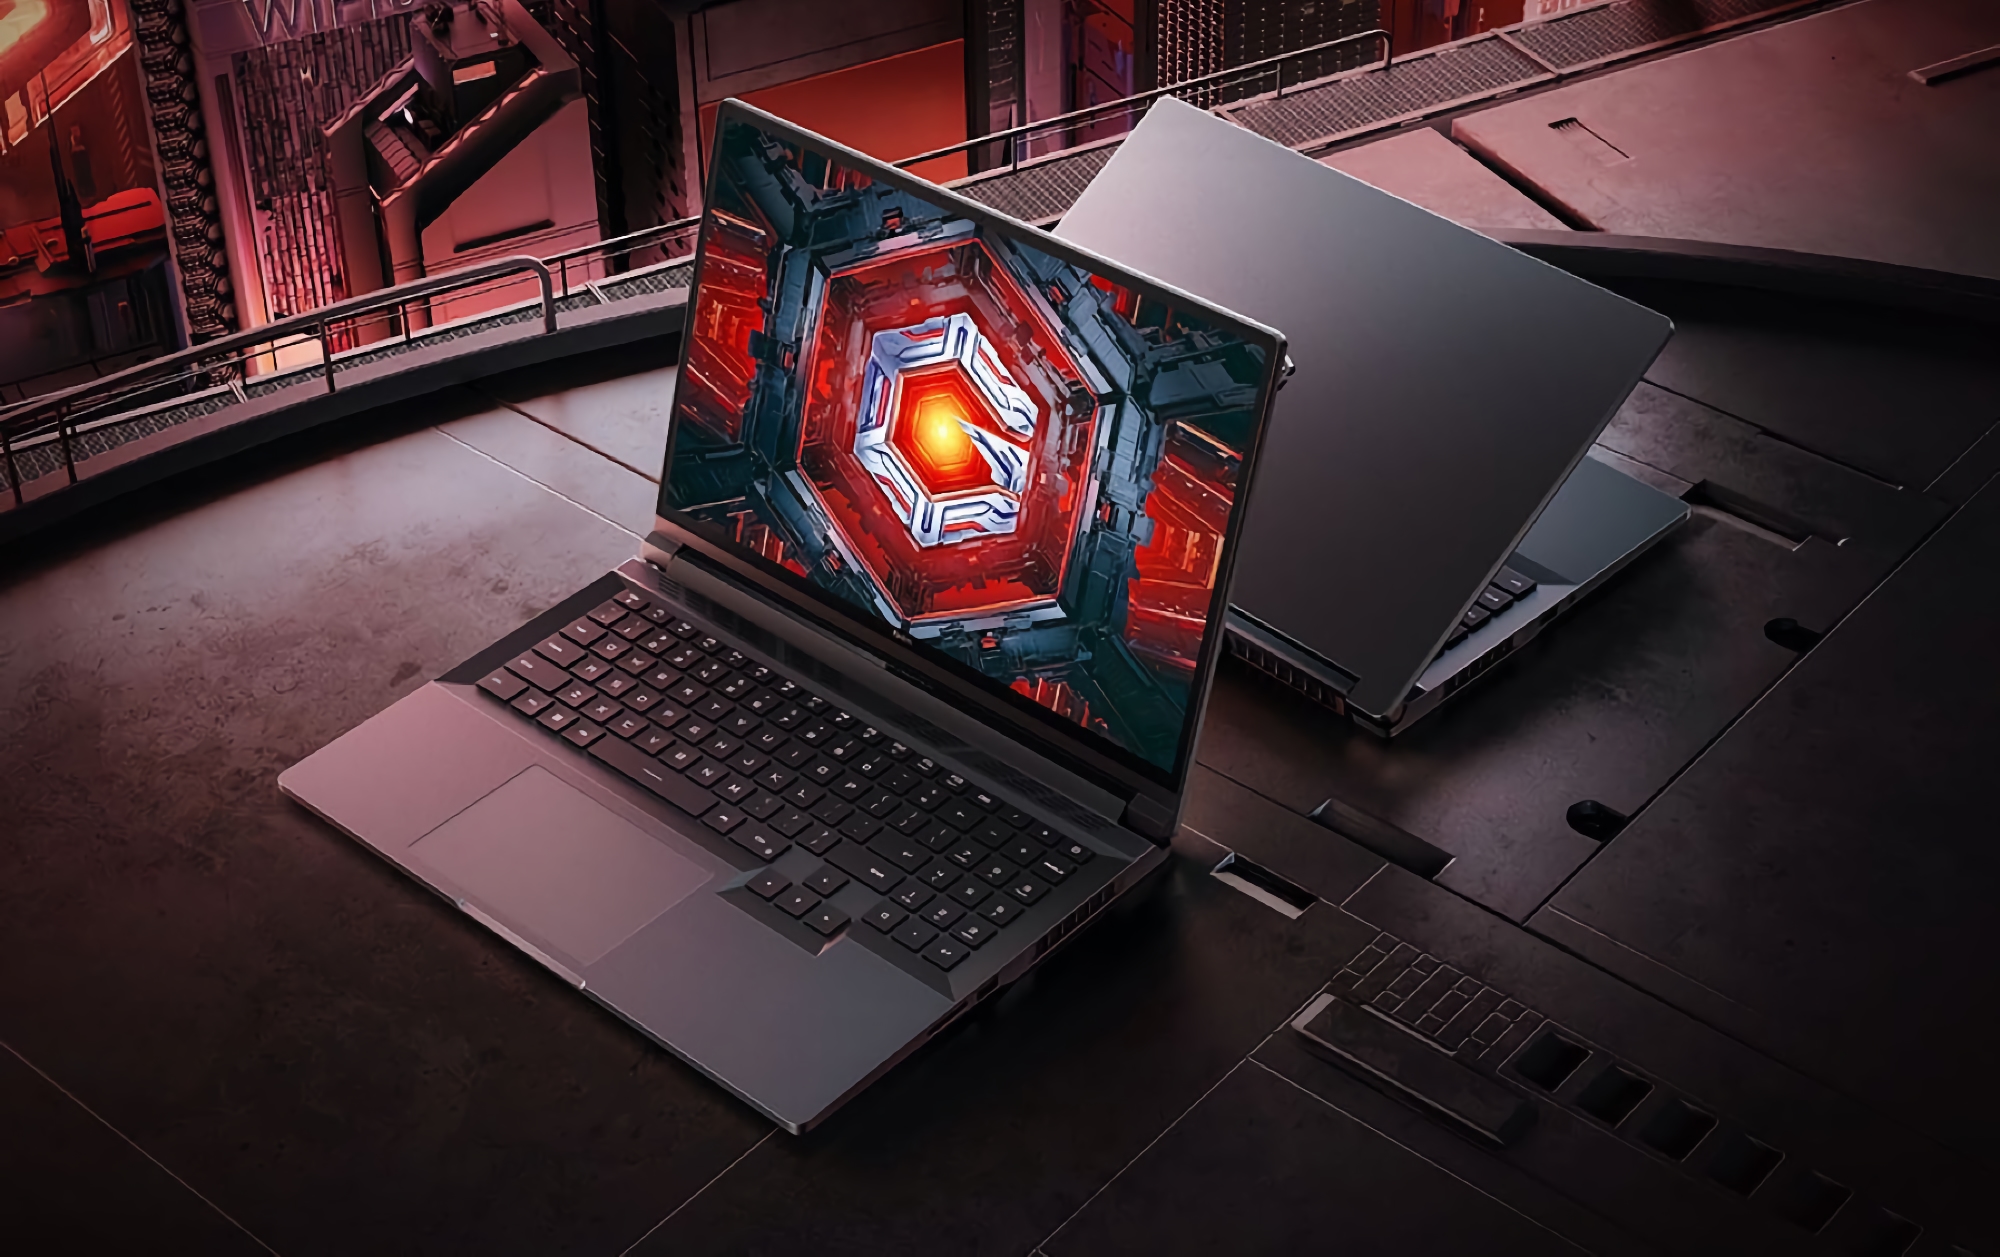 Redmi G Pro: Gaming-Laptop mit 240Hz-Bildschirm, AMD Ryzen 7 6800H Prozessor und Nvidia GeForce RTX 3060 Grafikkarte für 1090$